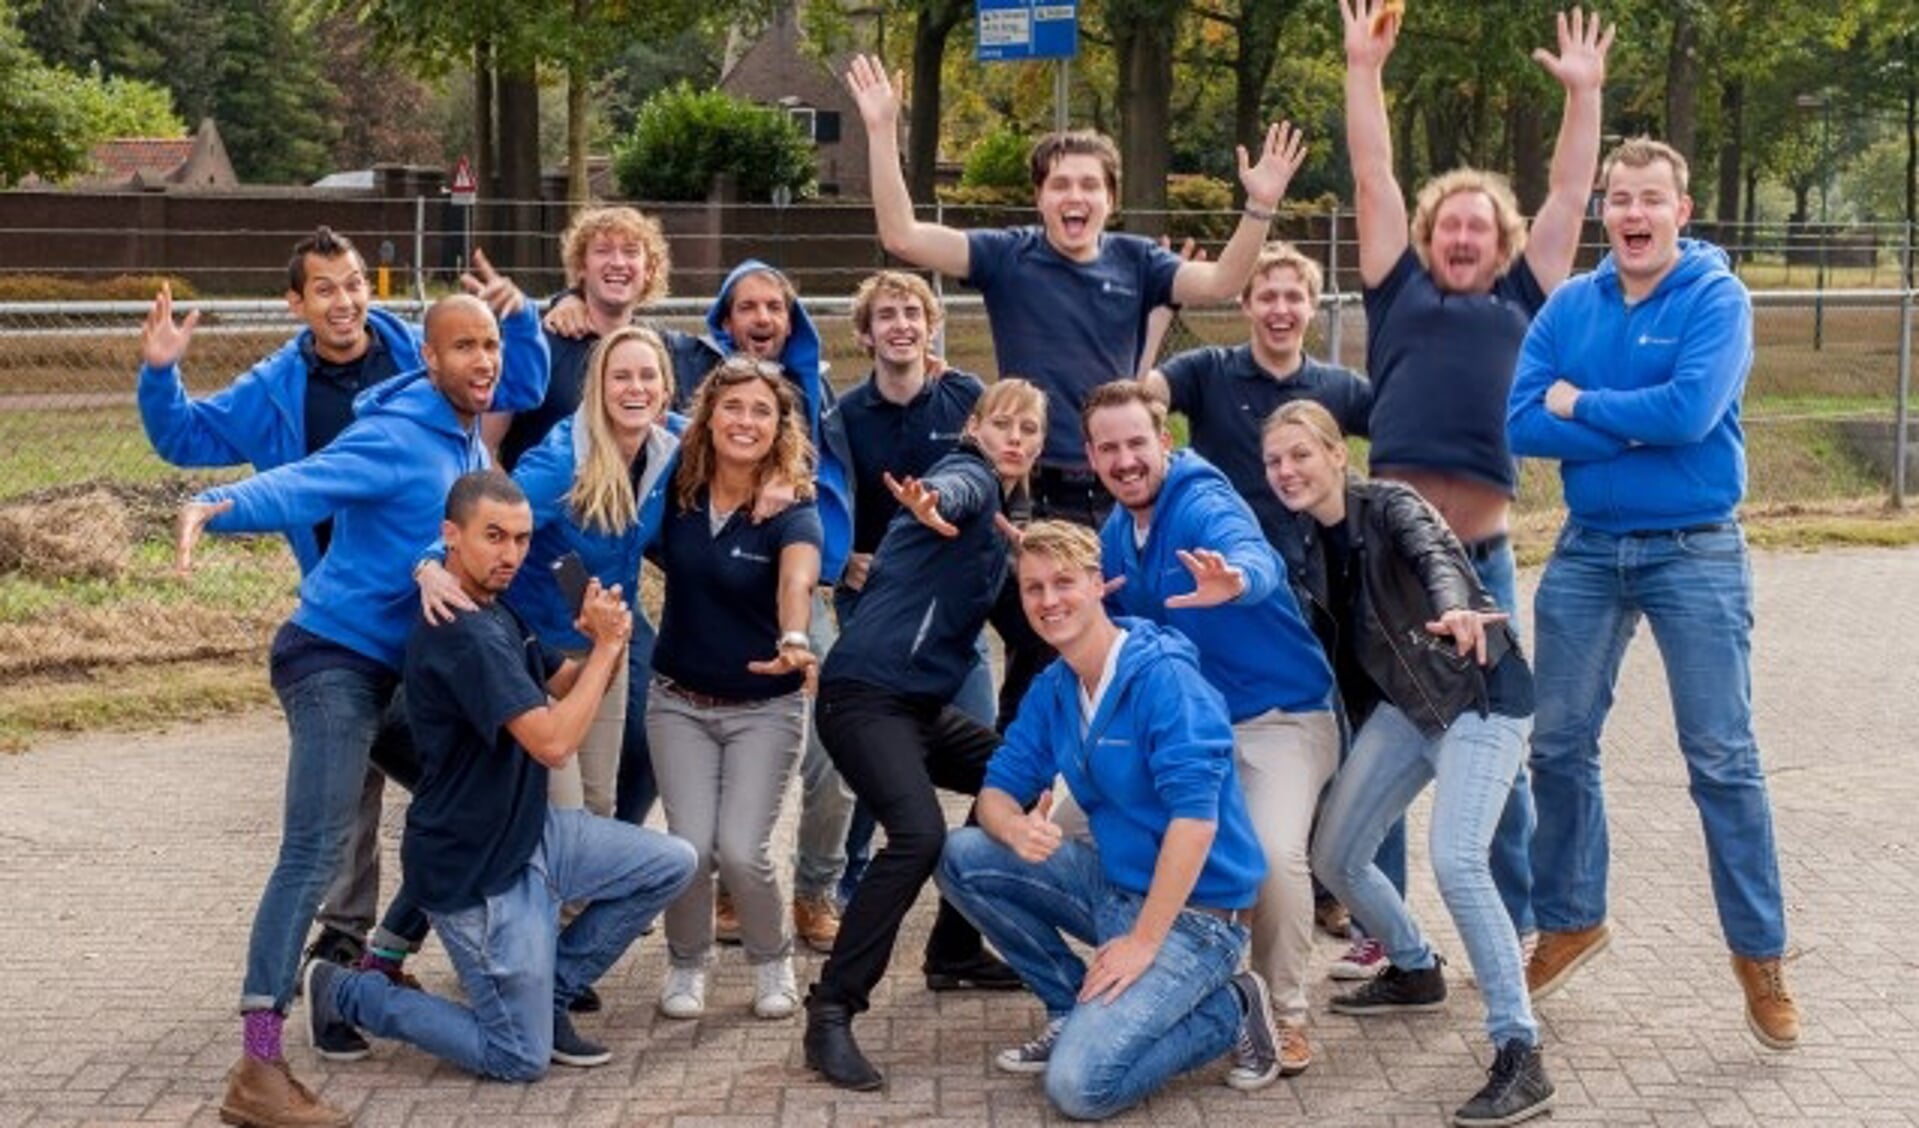 De 27-jarige Marleen van Meel (tweede rij, tweede van links) is als nieuwe eigenaar van het bedrijf TVworkshop trots op haar team. 